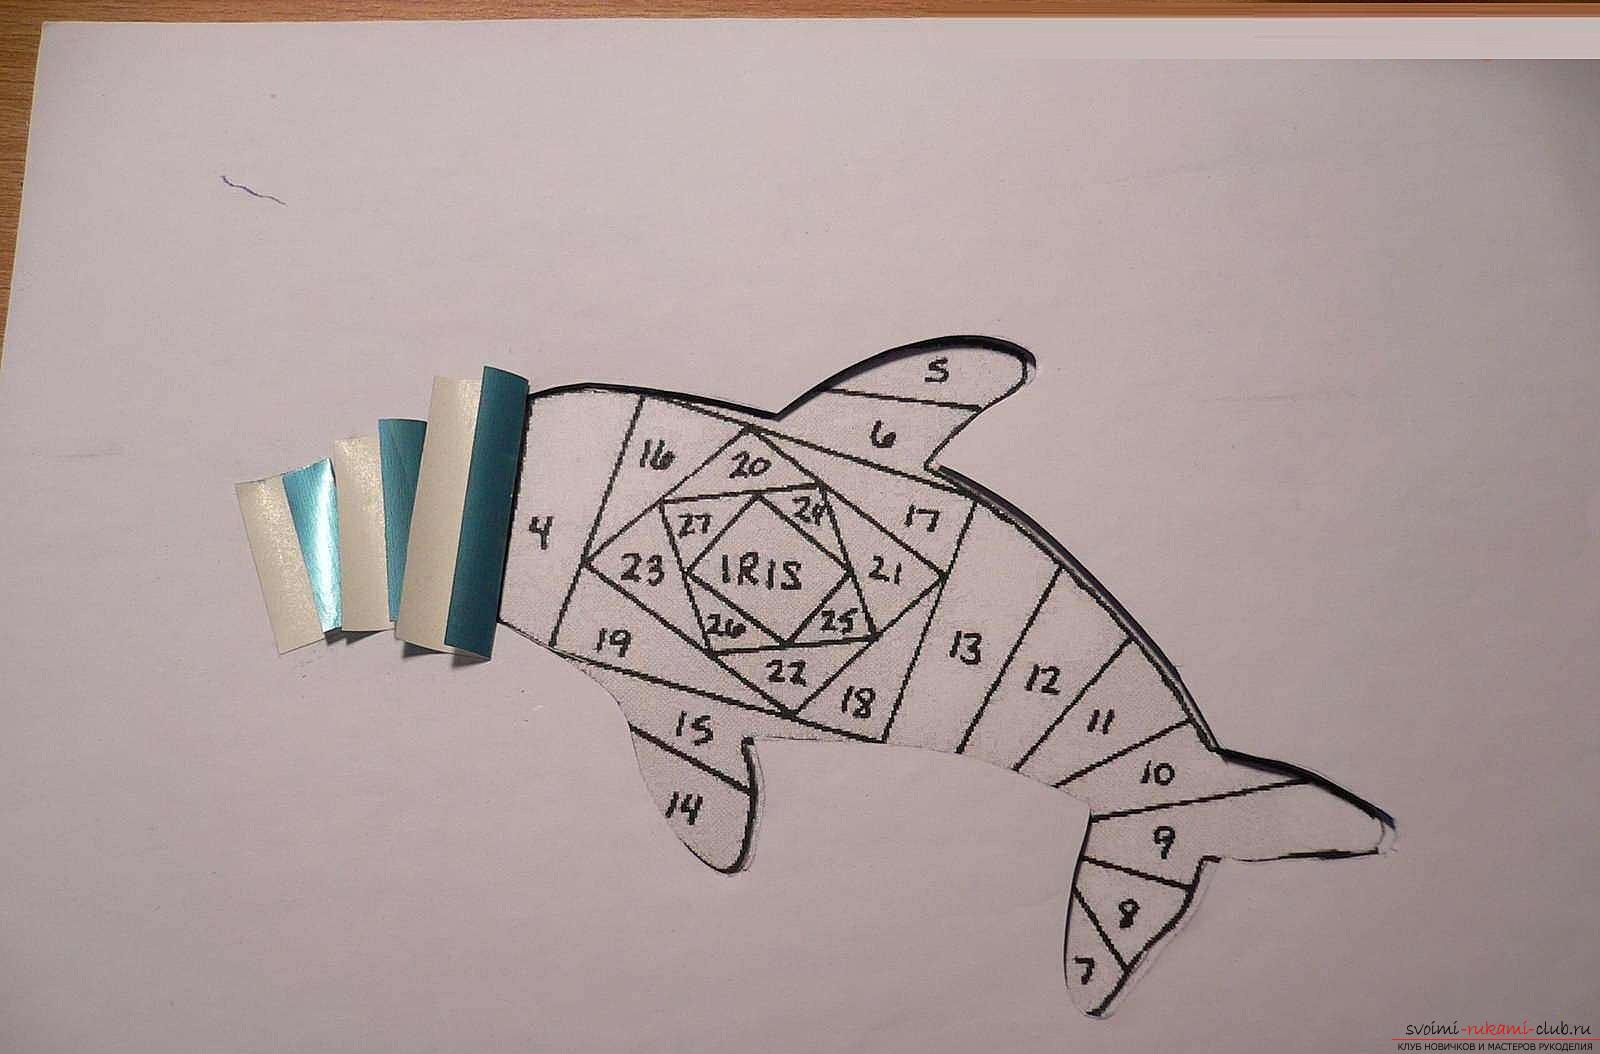 Как сделать картинку с дельфином в технике айрис фолдинг, подробная инструкция с шаблоном, фото и описанием работы